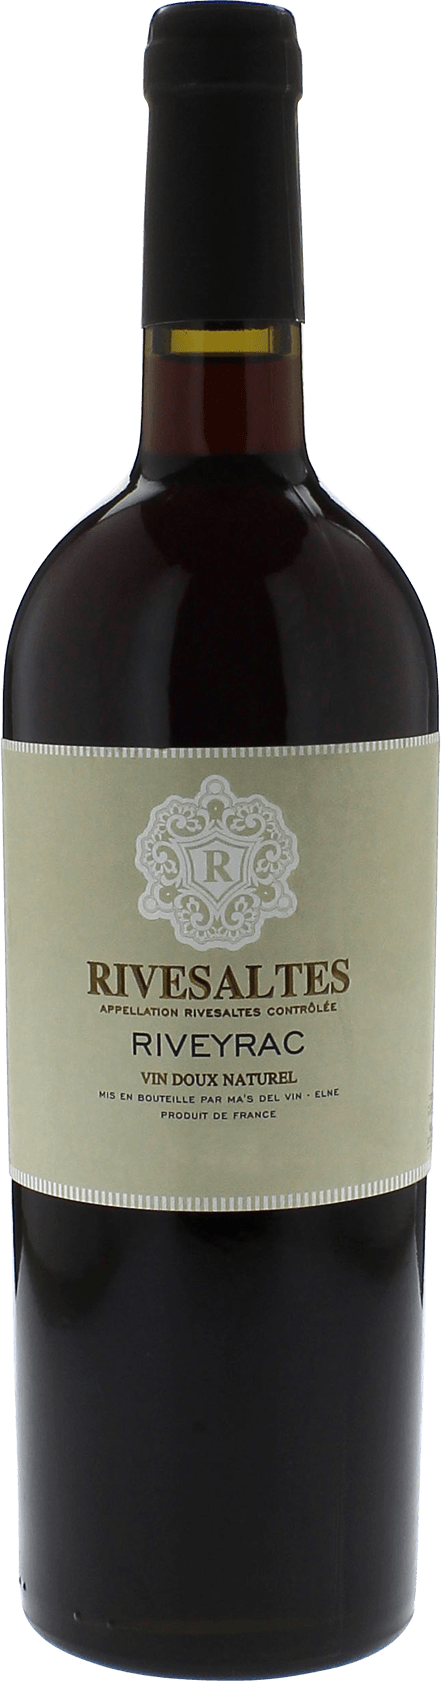 Rivesaltes riveyrac 1969 Vin doux naturel Rivesaltes, Vin doux naturel